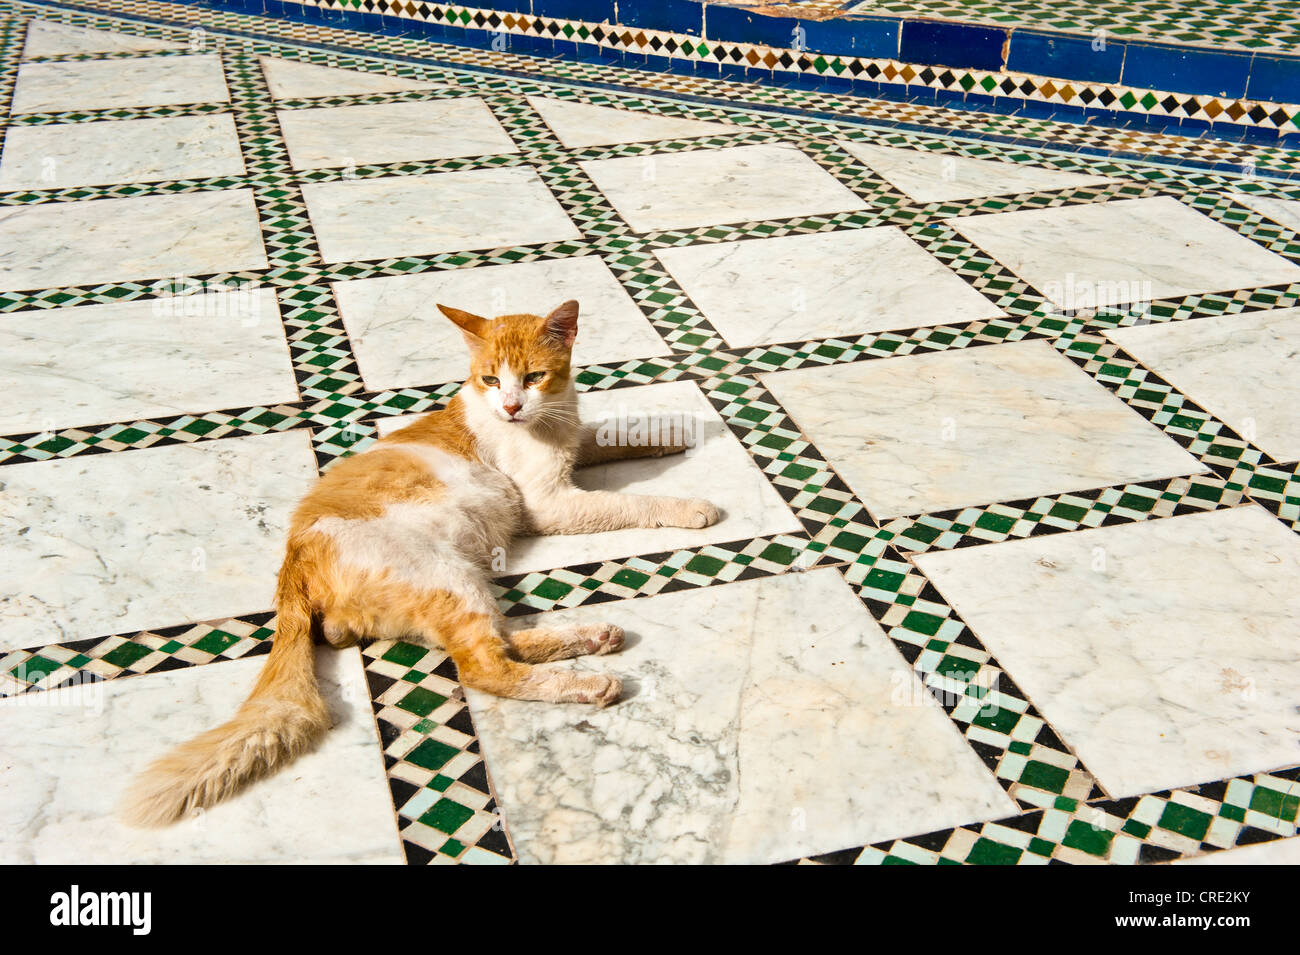 Gatto seduto su un pavimento con zellige piastrelle a mosaico, Palazzo Bahia, Marrakech, Marocco, Africa Foto Stock